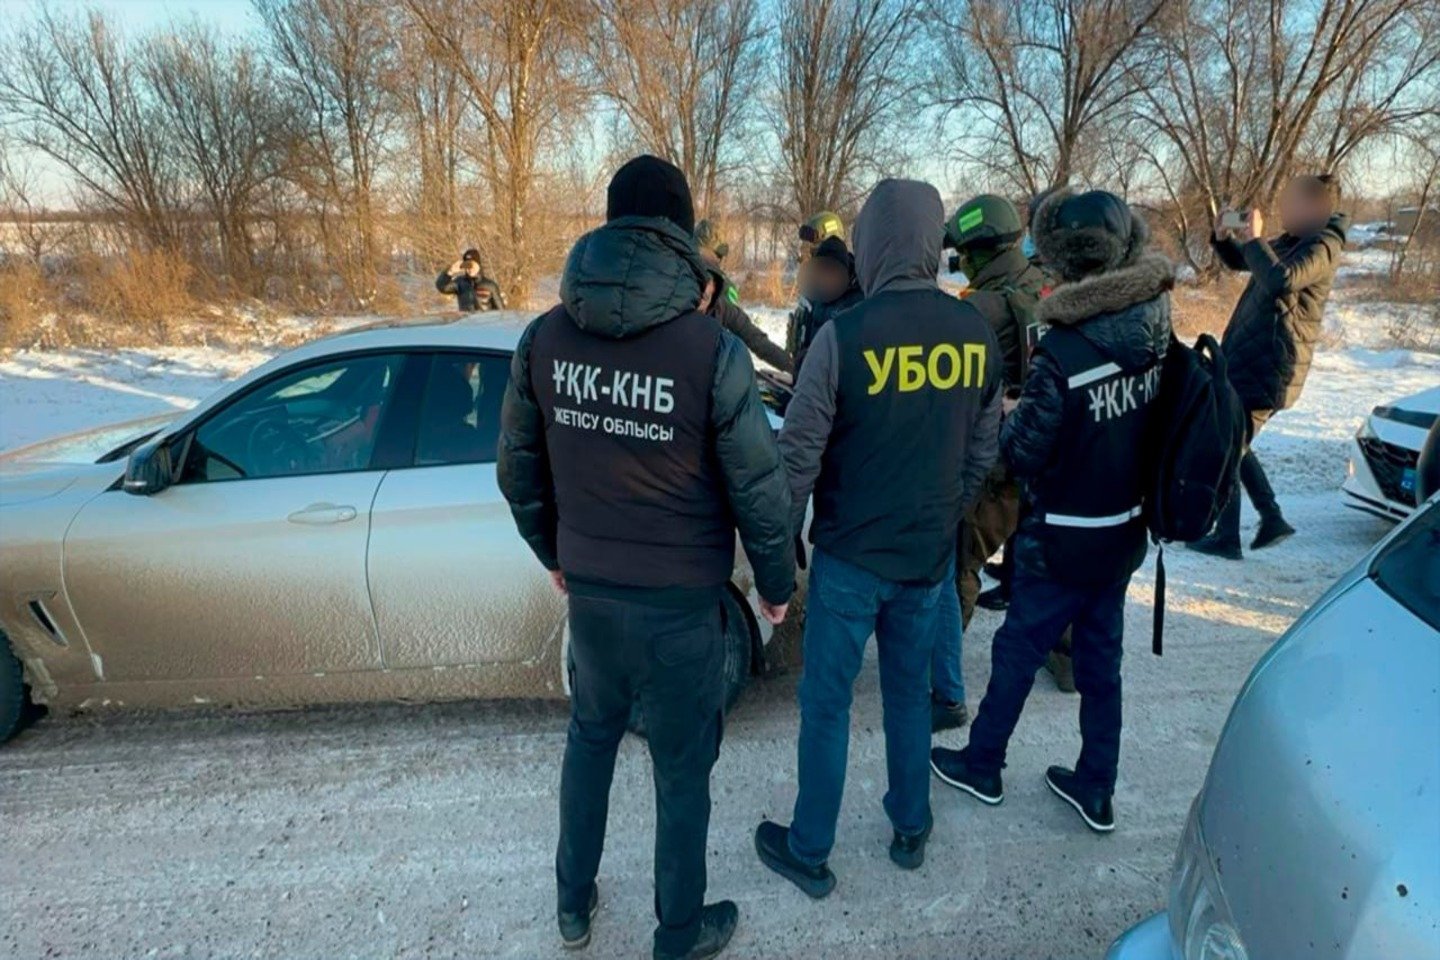 Происшествия в Казахстане и мире / ДТП / Молодая женщина в ВКО не справилась с управлением автомобилем и погибла